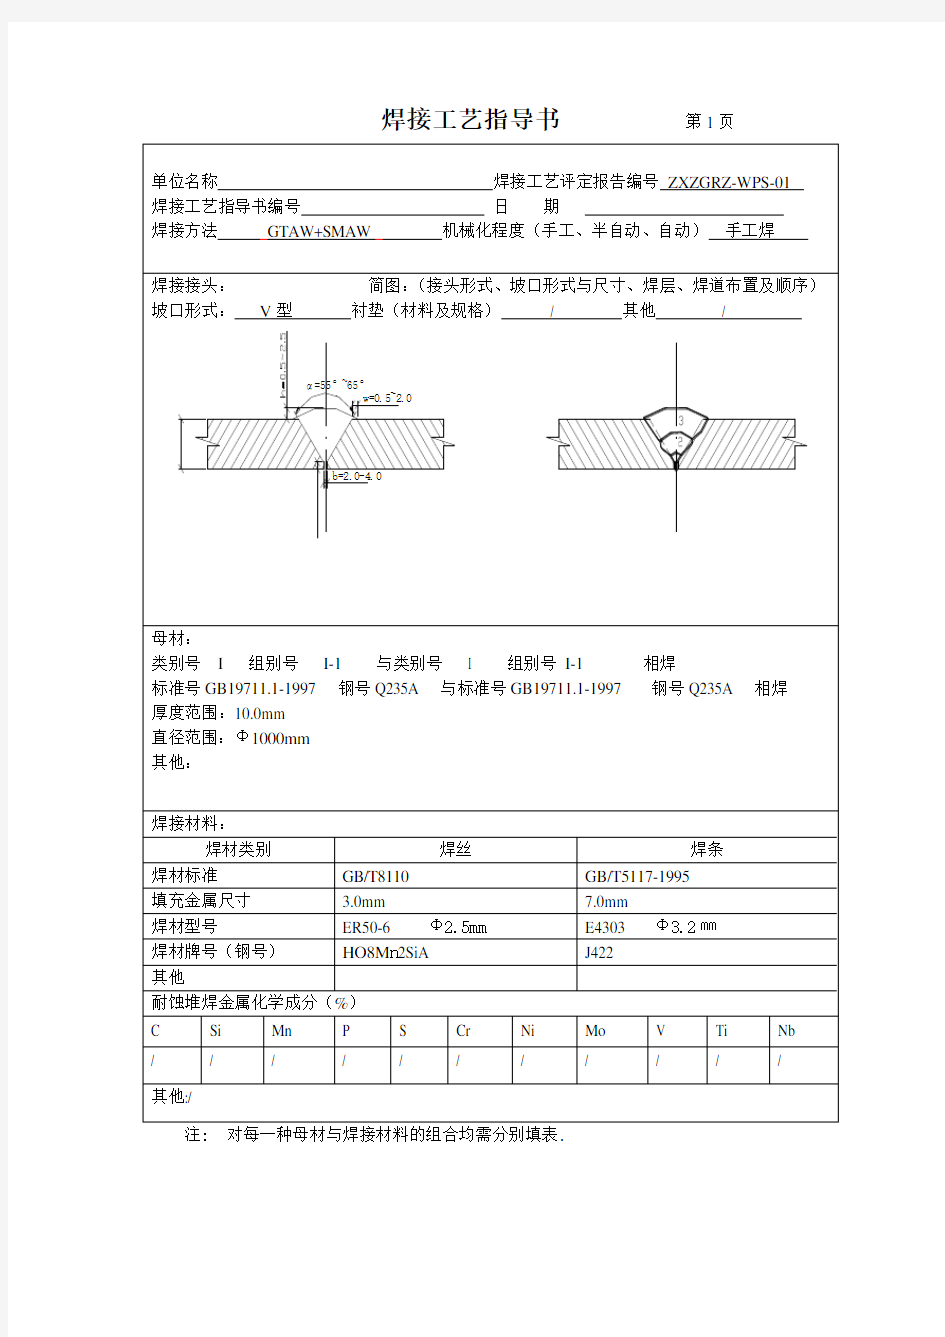 焊接工艺指导书(全)